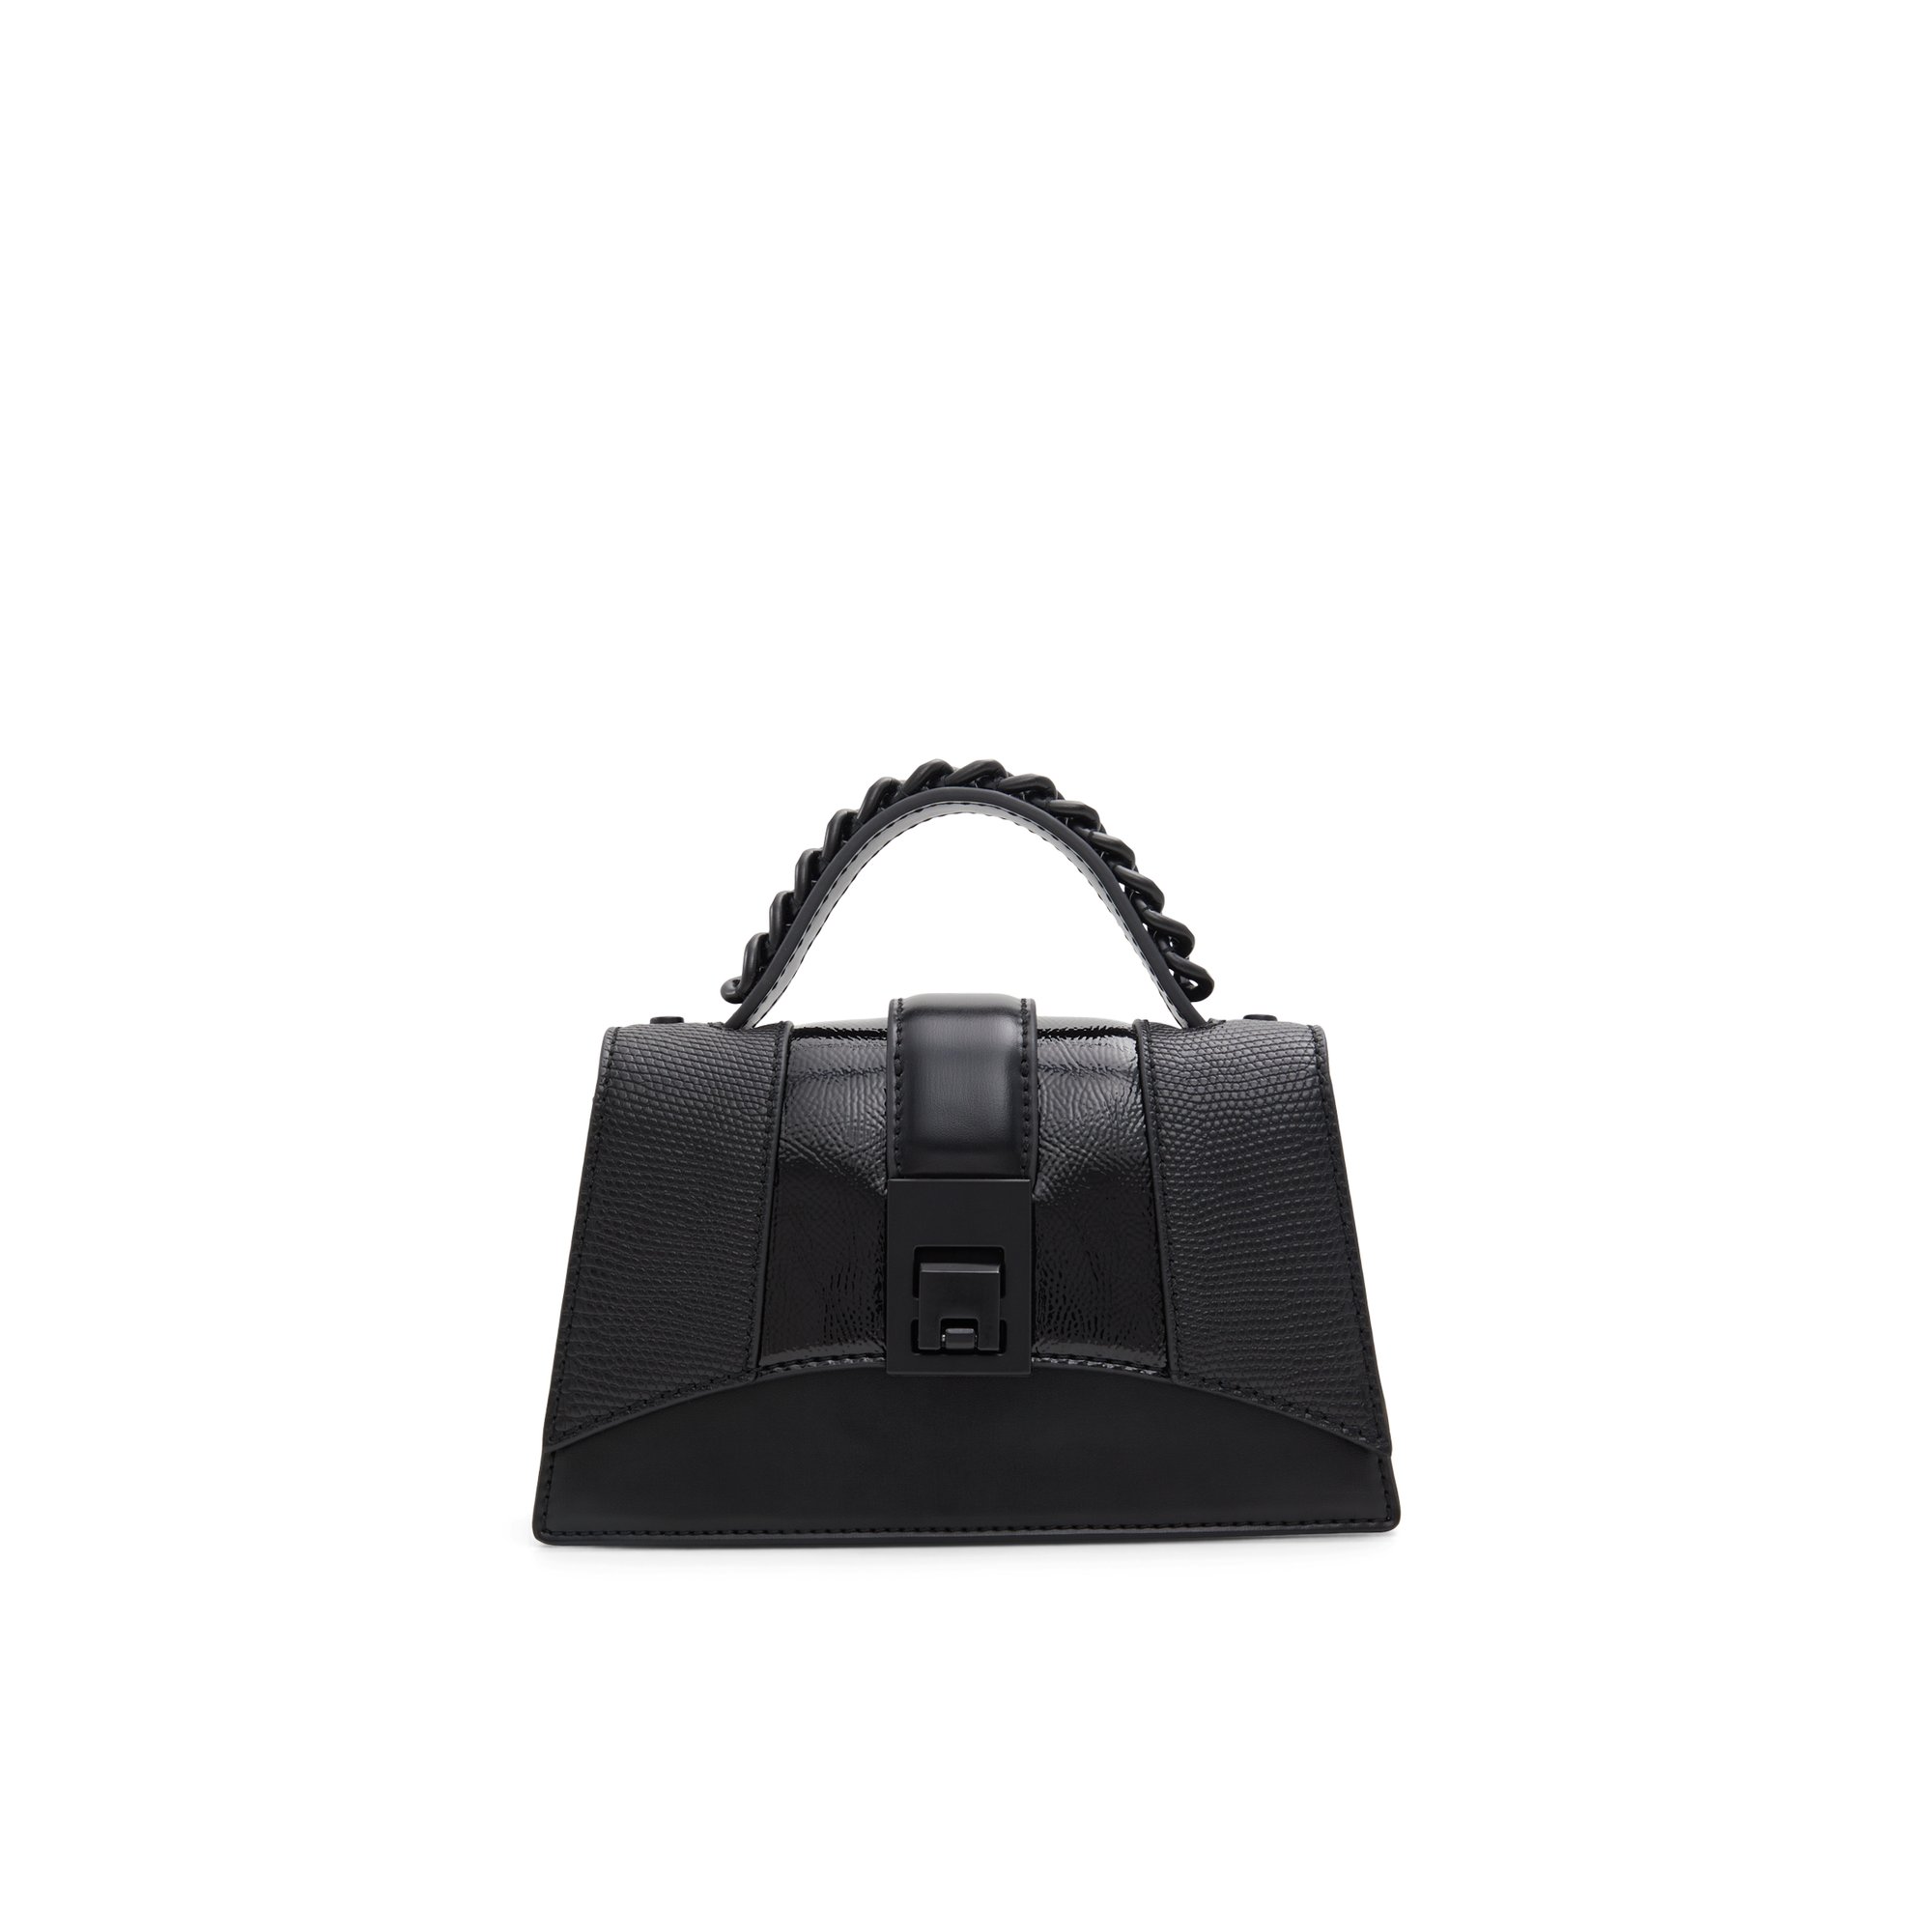 ALDO Ryansx - Women's Handbag - Black